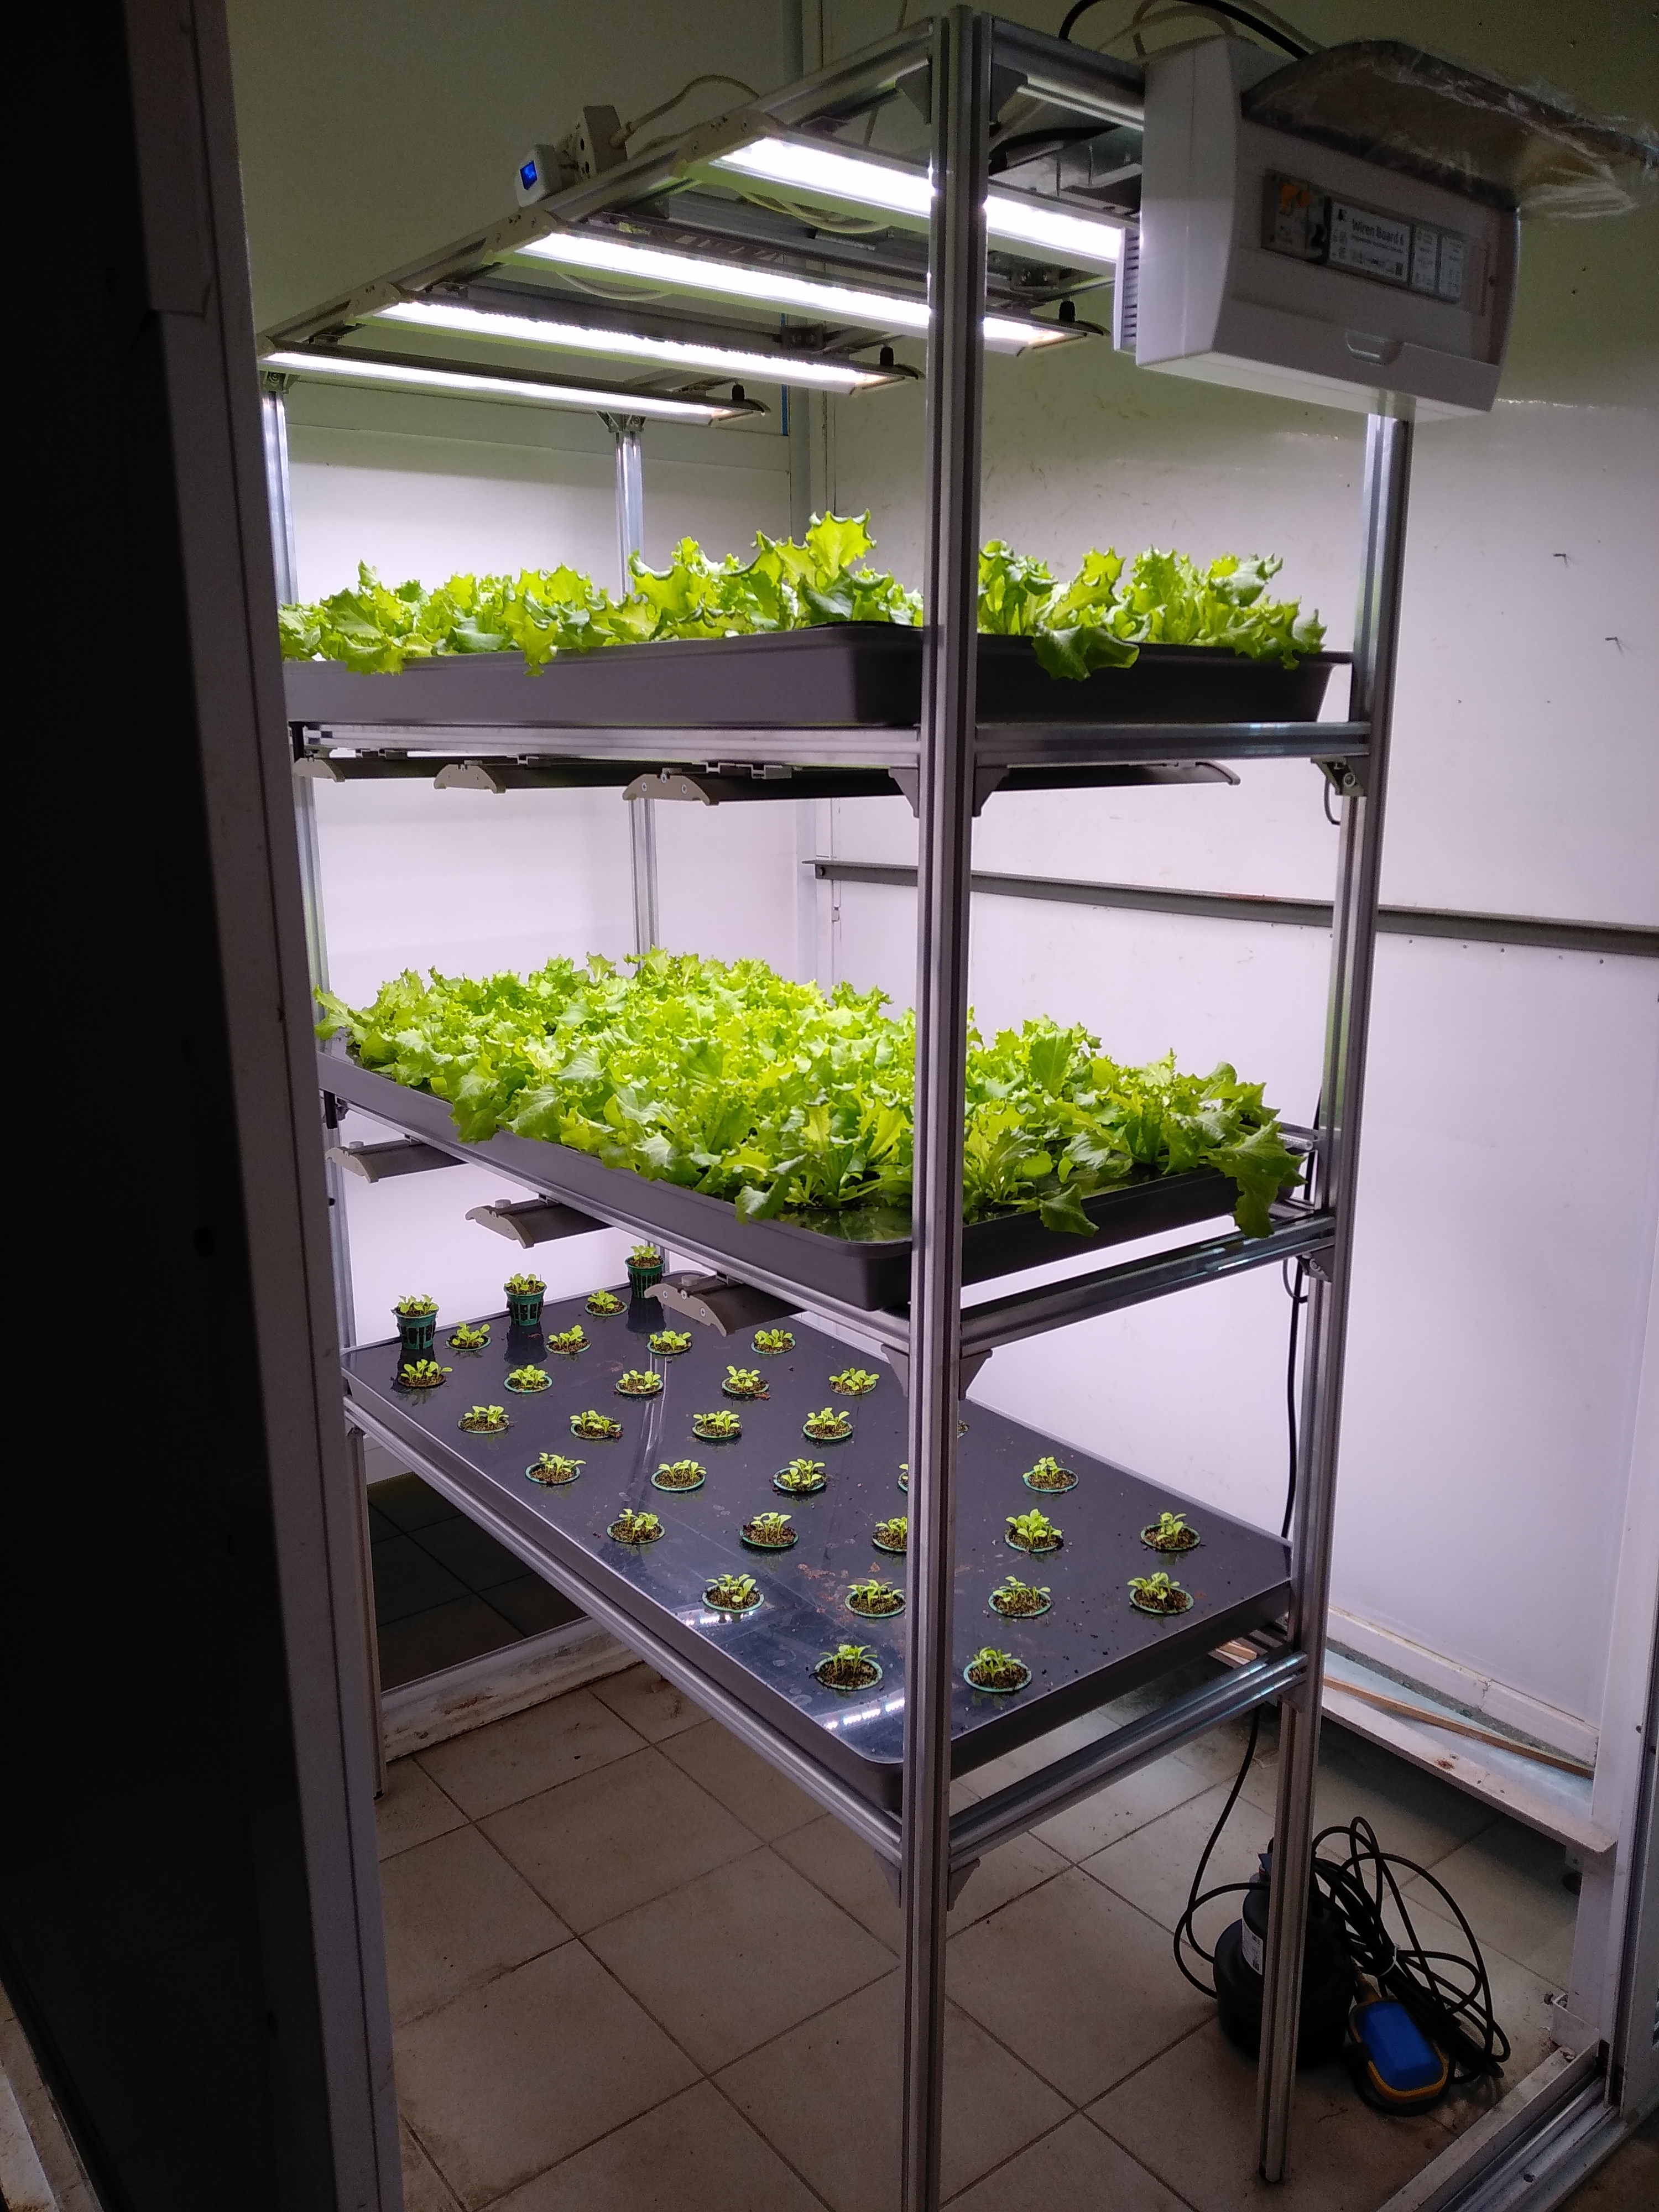 Демонстрационная установка, на которой показываются возможности автоматизации. На данный момент выращивается салат, но потом основными культурами станут картофель и голубика